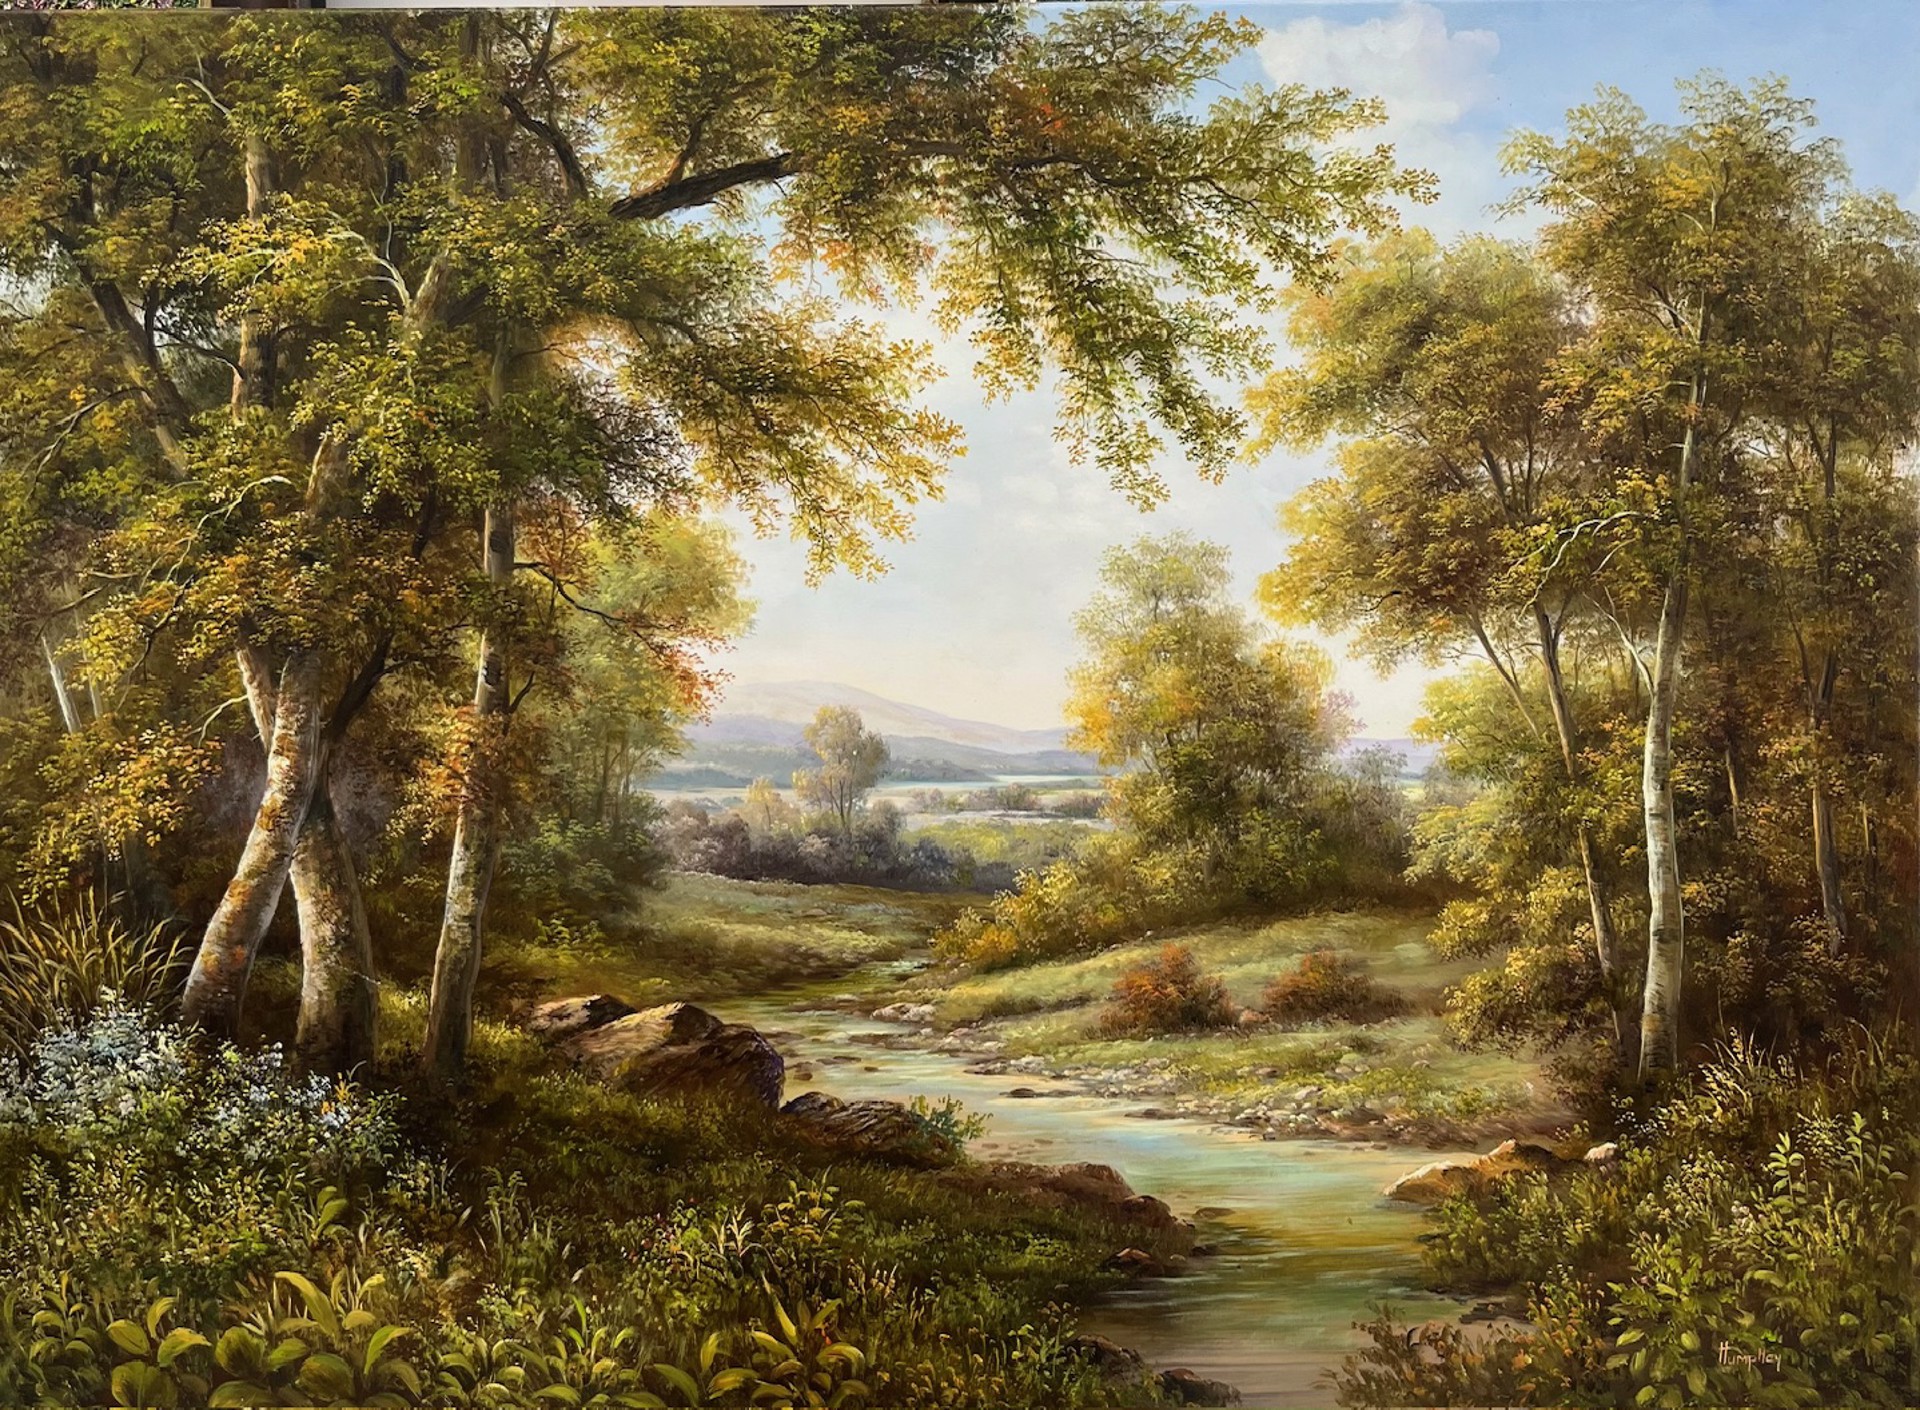 Foxtrot Creek by Song Humphrey